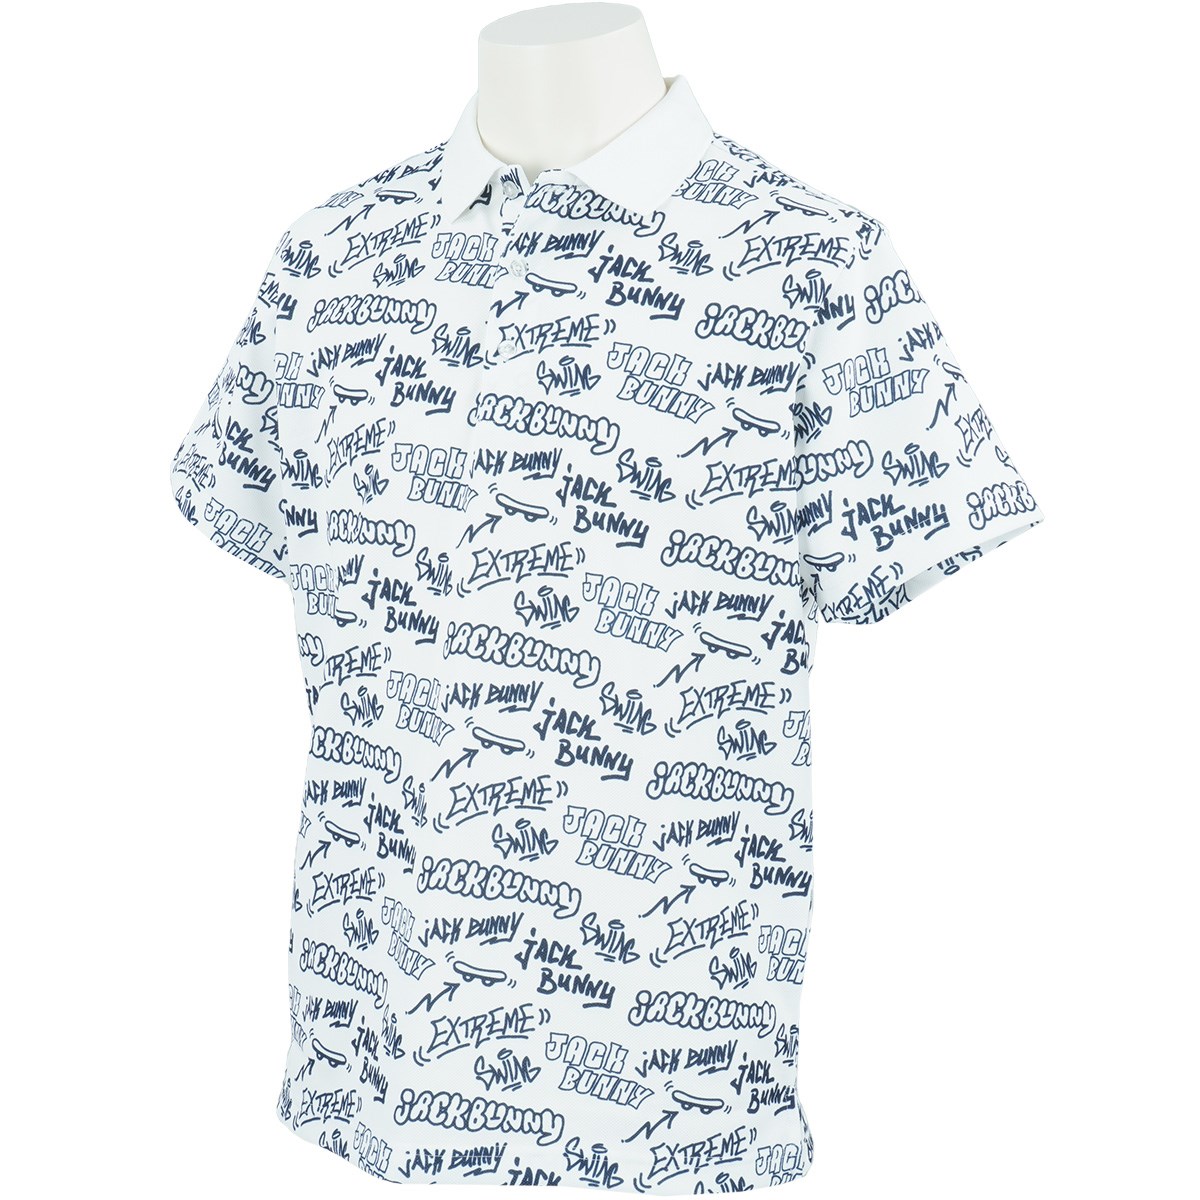 セオa鹿の子 半袖ポロシャツ(半袖シャツ・ポロシャツ)|Jack Bunny 